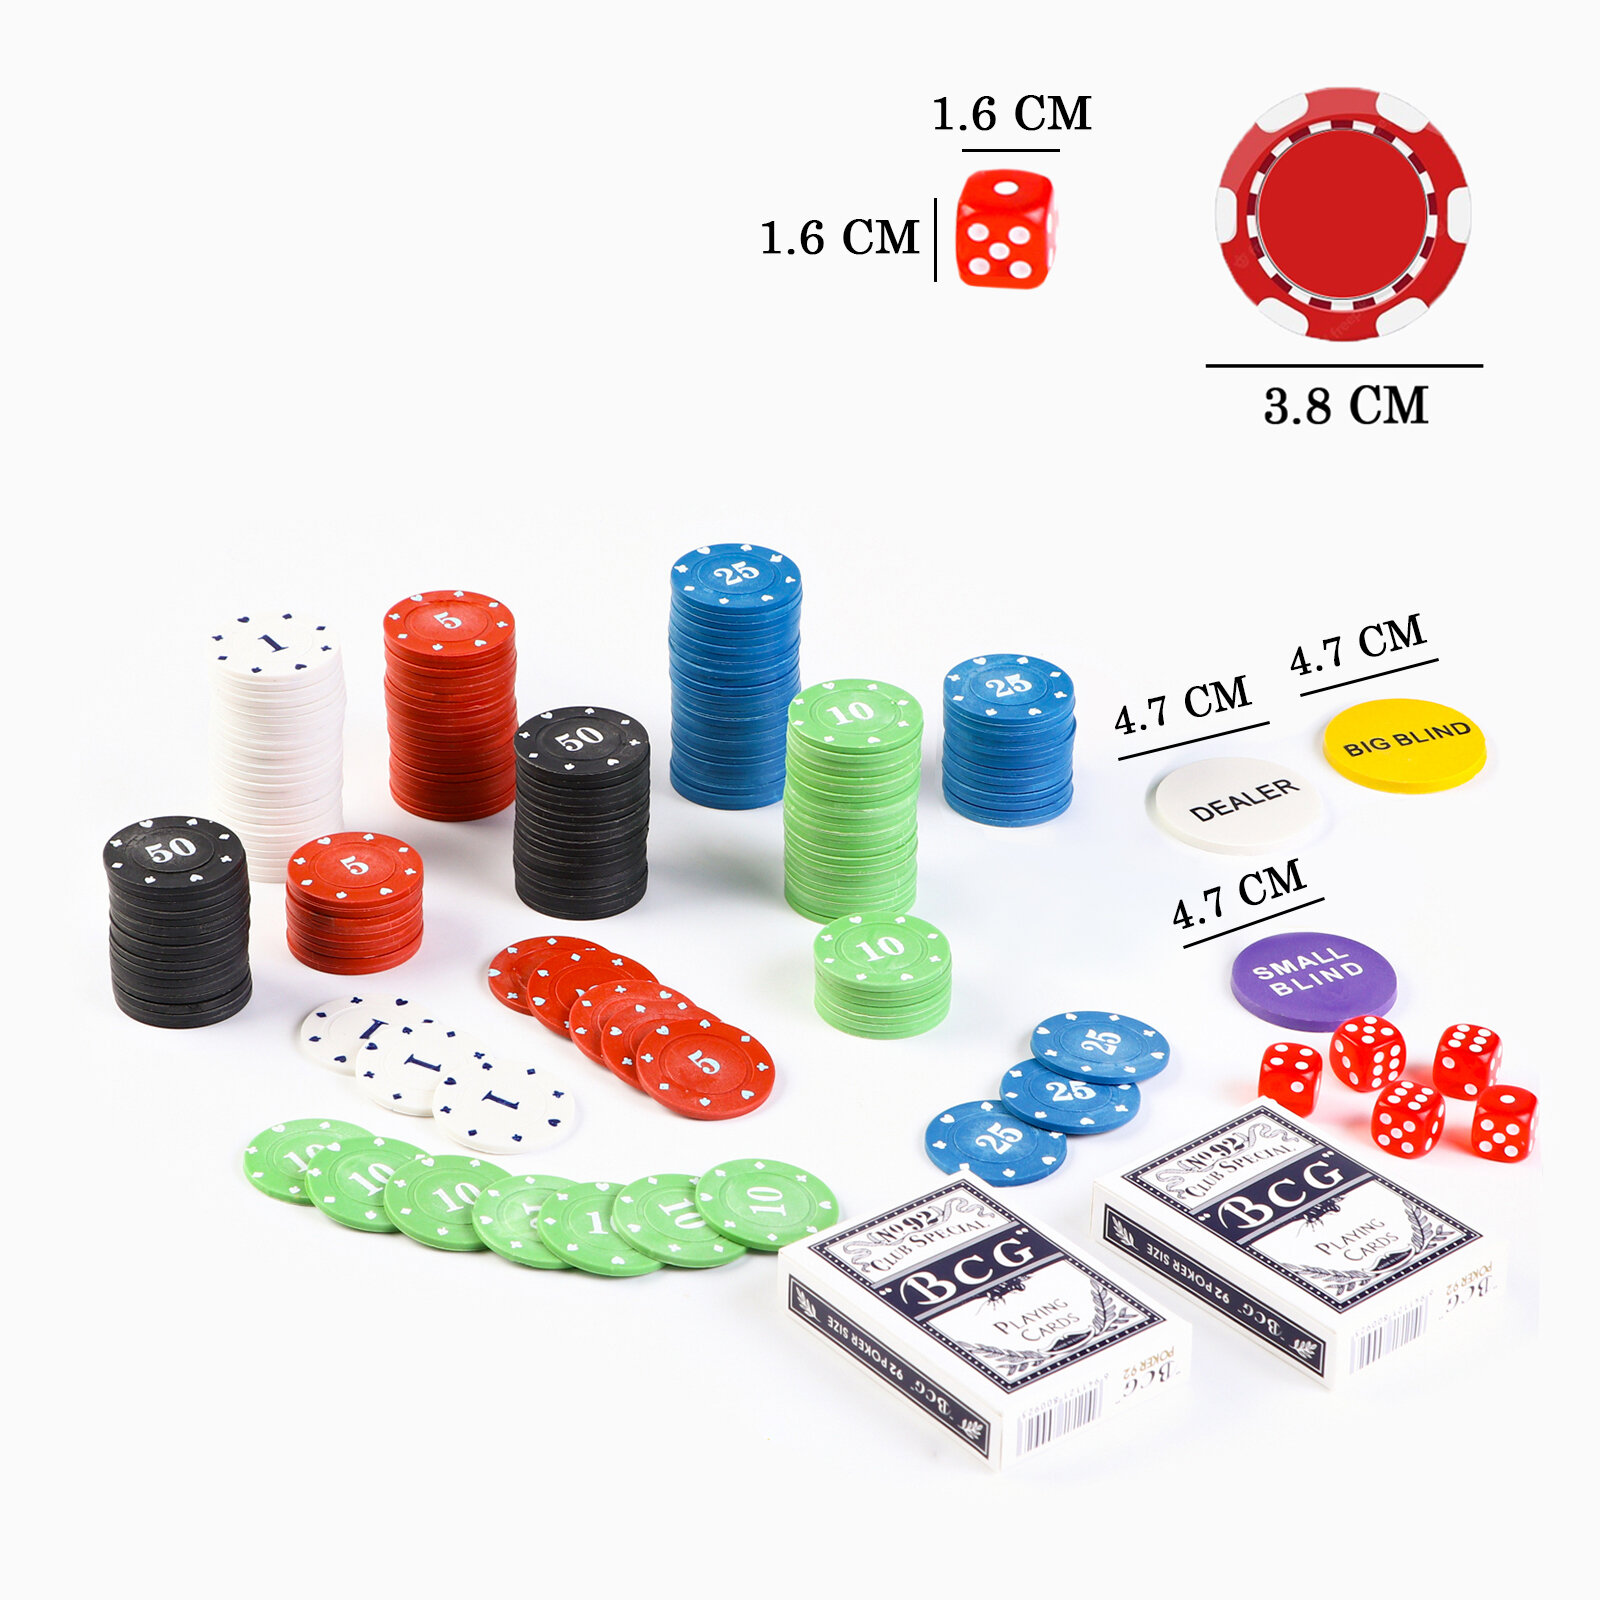 Покер, набор для игры (200 фишек, 2 колоды карт, 5 кубиков)